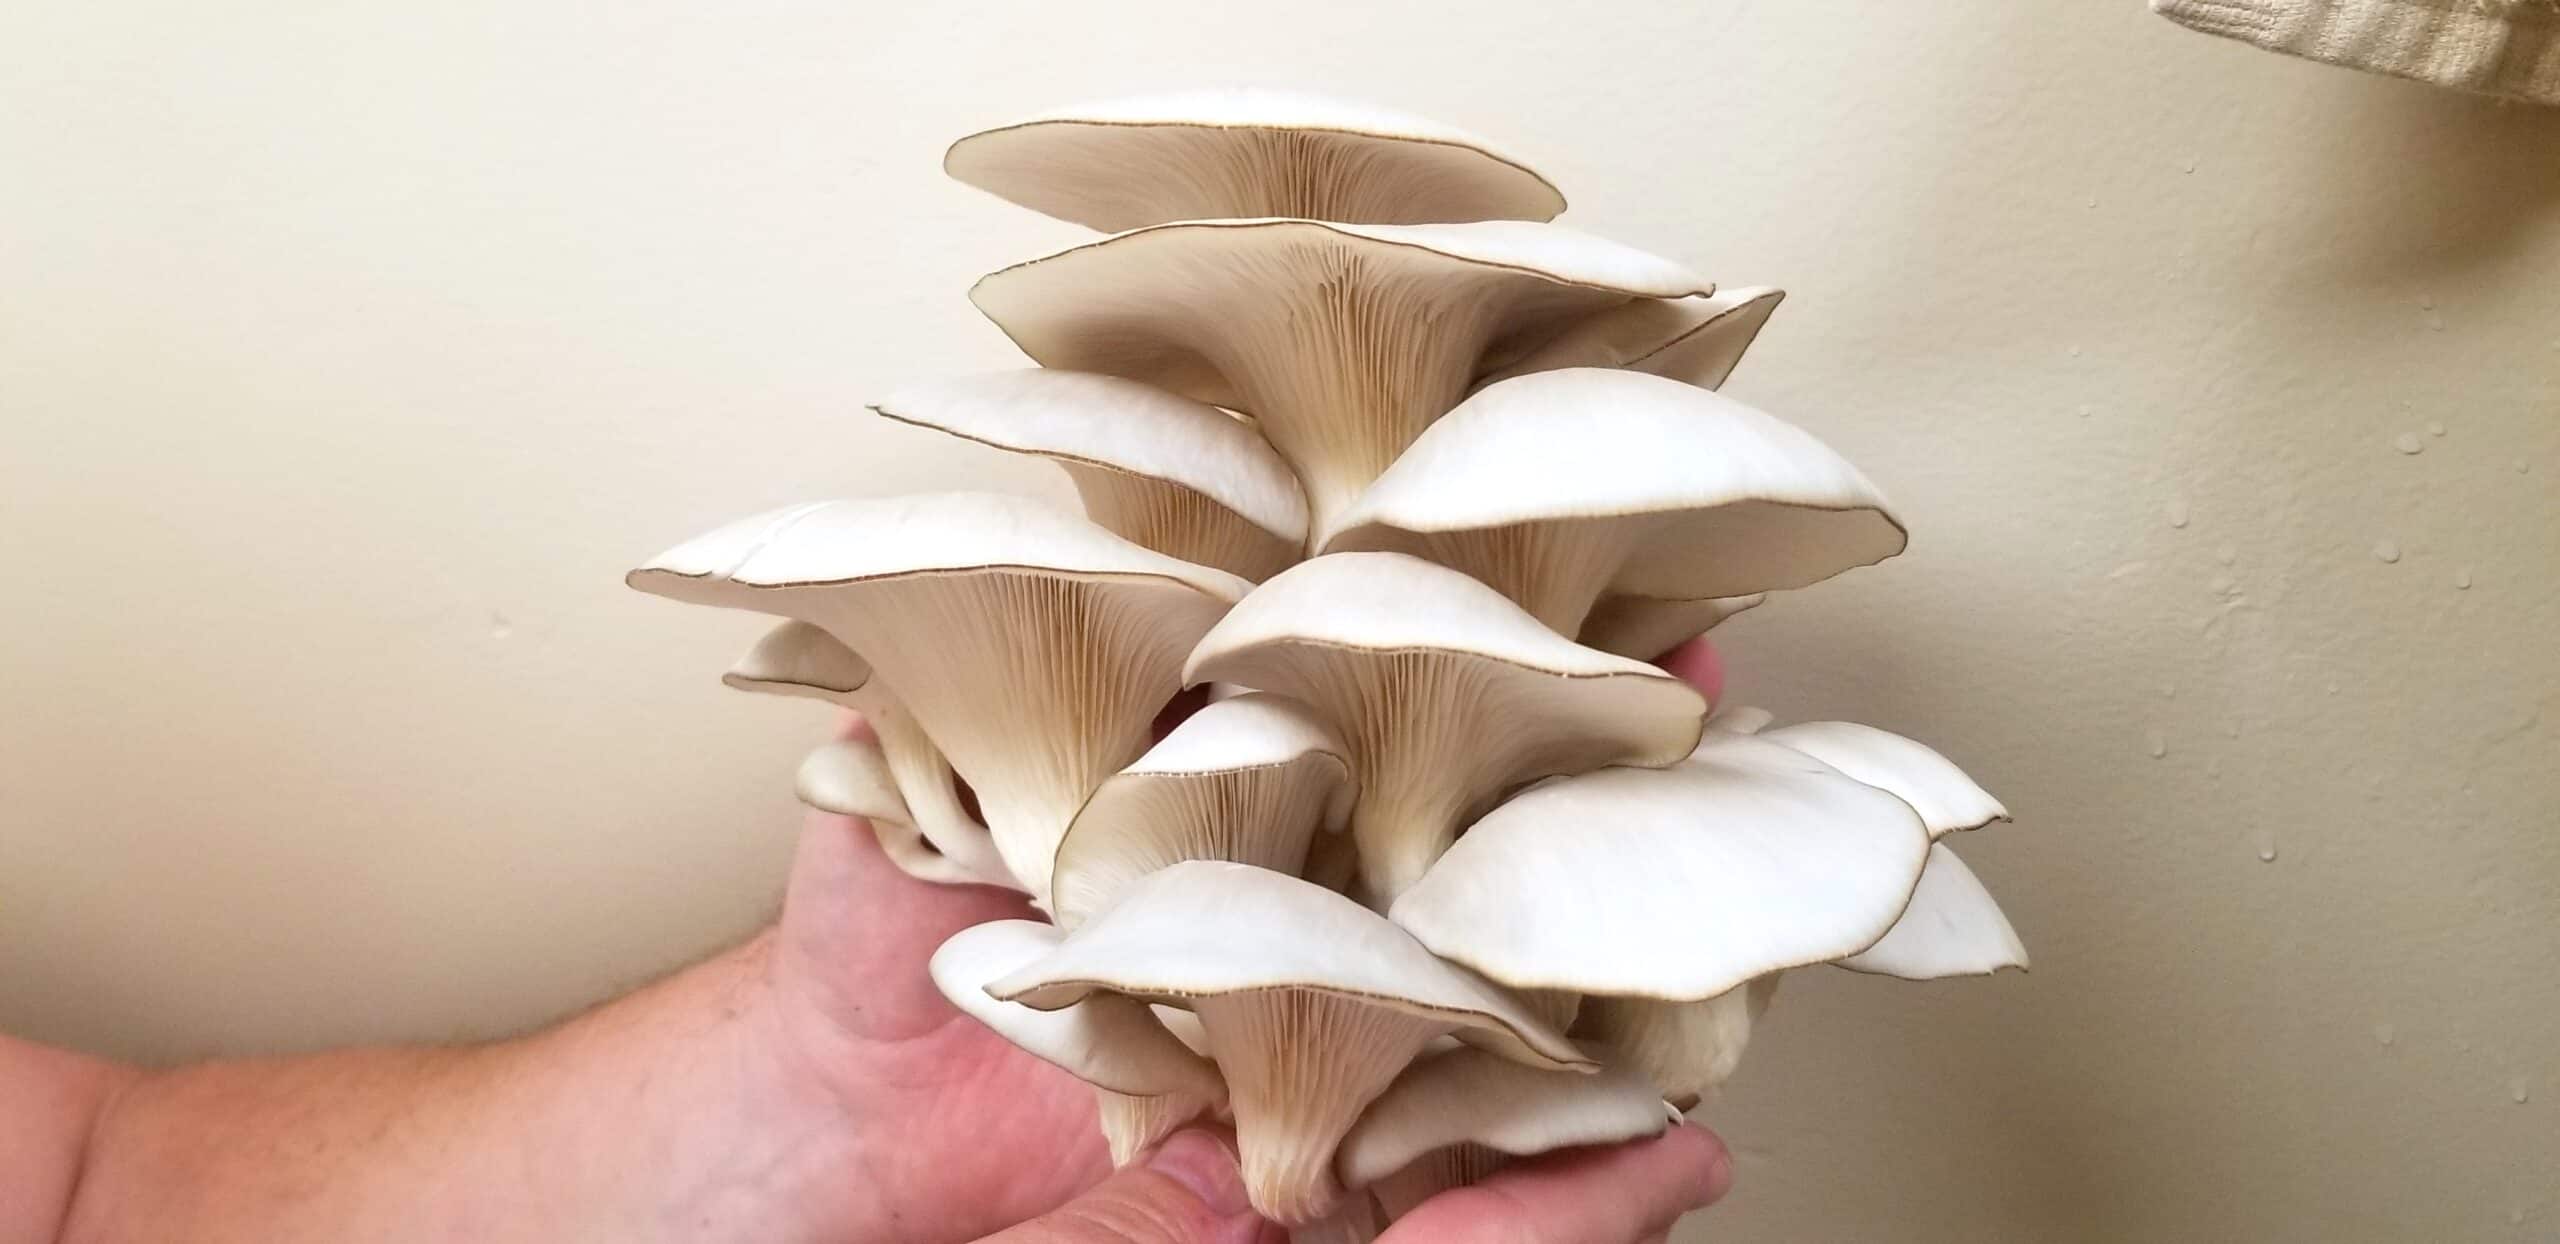 north spore mushrooms